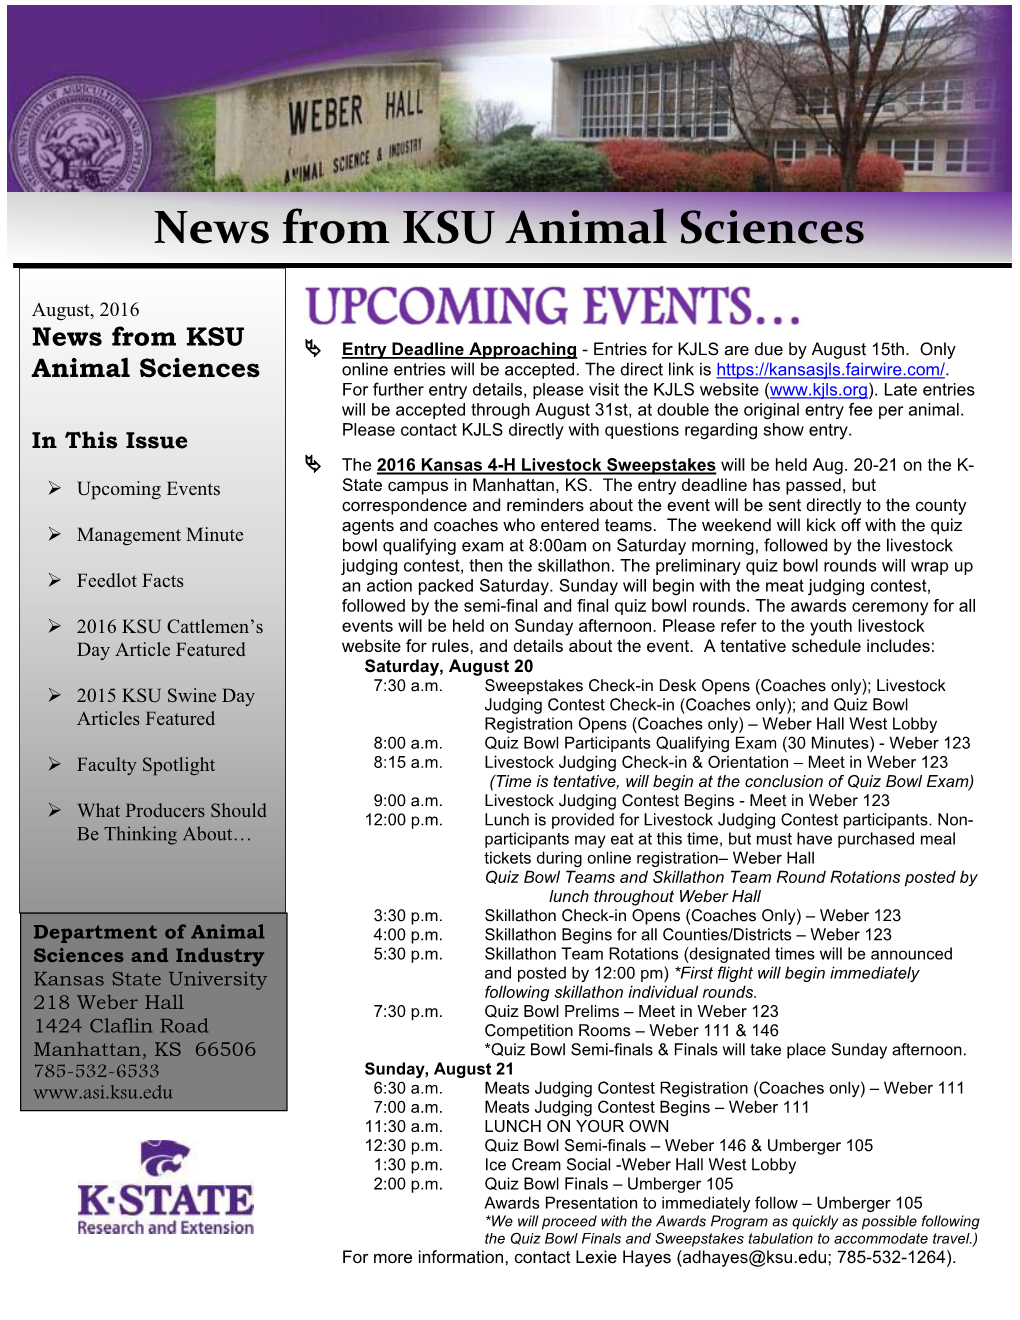 News from Ksu Animal Sciences